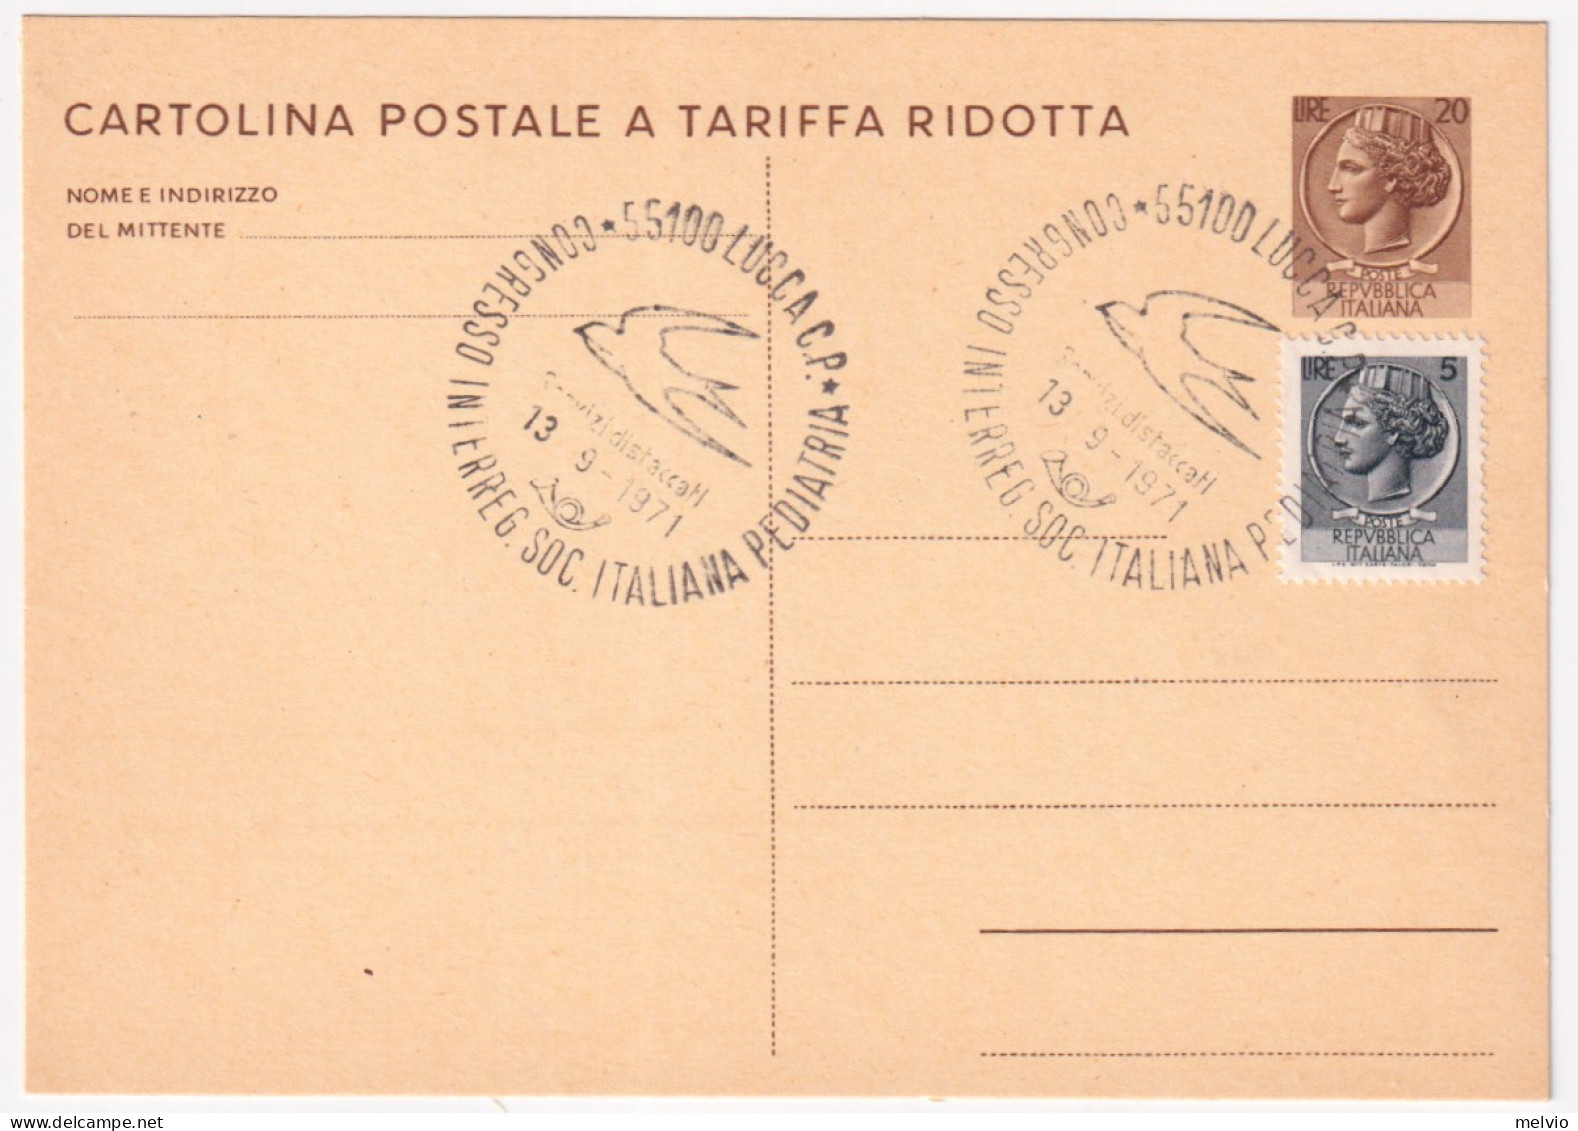 1971-LUCCA Societa Italiana Pediatria (13.9) Annullo Speciale Su Cartolina Posta - 1971-80: Marcophilia